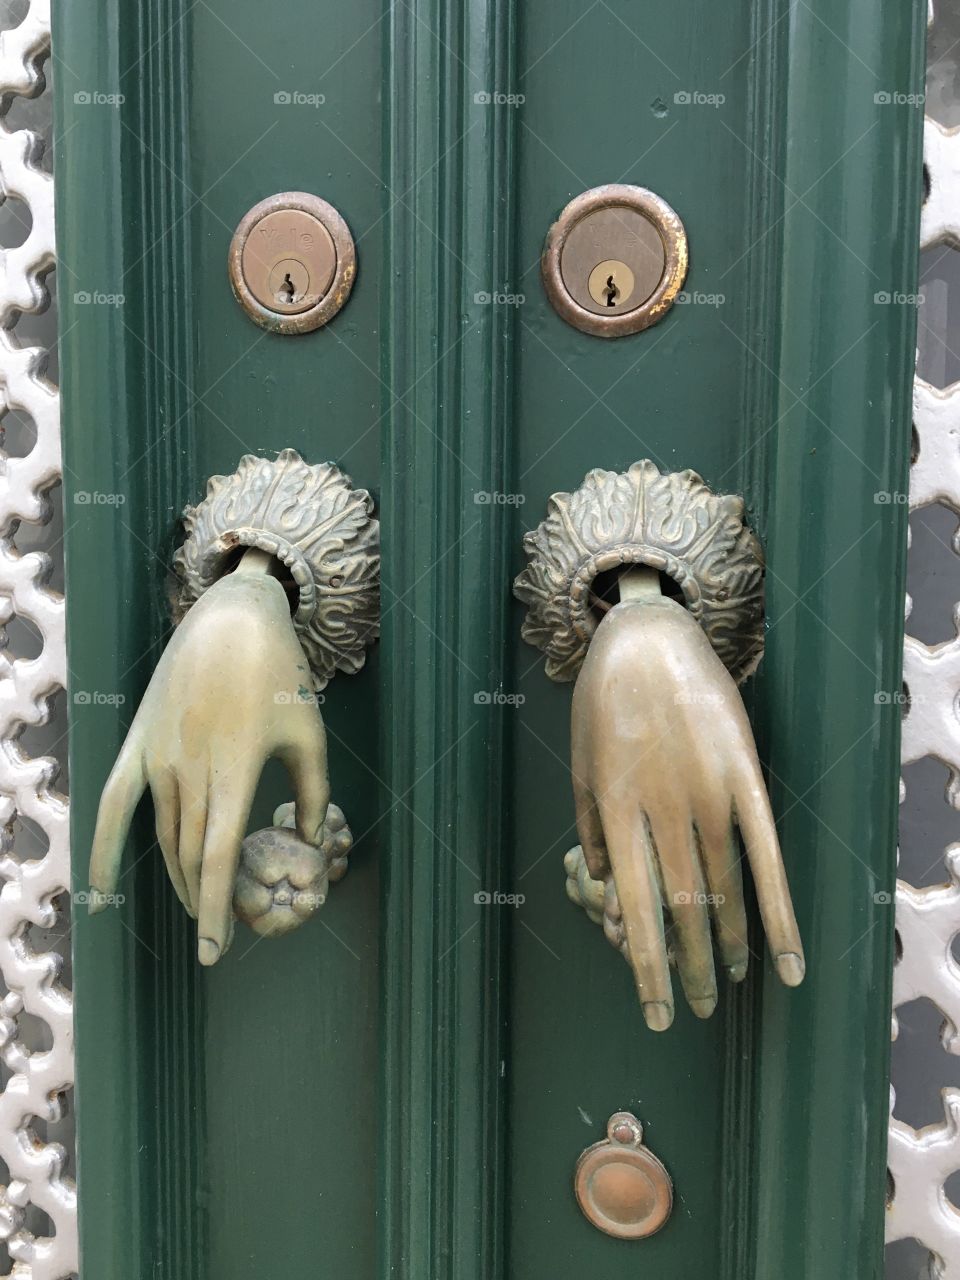 Two woman’s hands as door bells